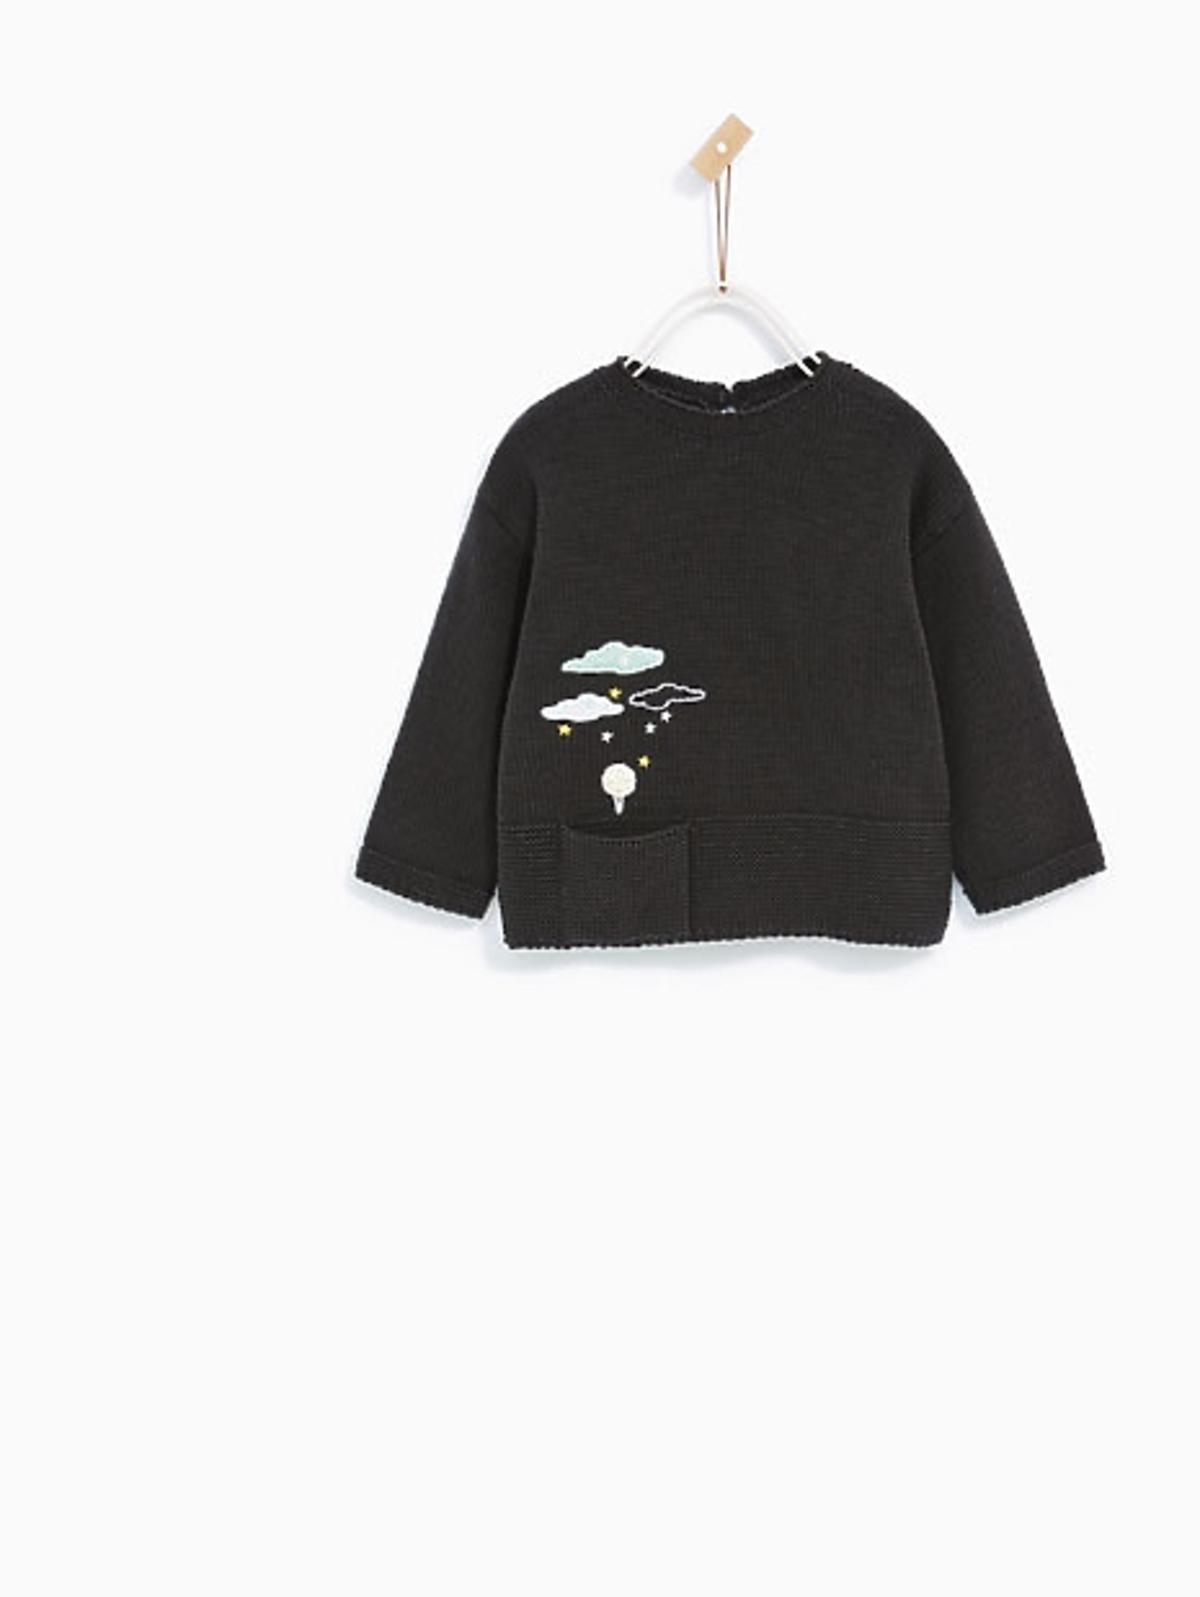 grafitowy sweterek dla niemowlęcia 39.90zl 79.90zl zara.jpg